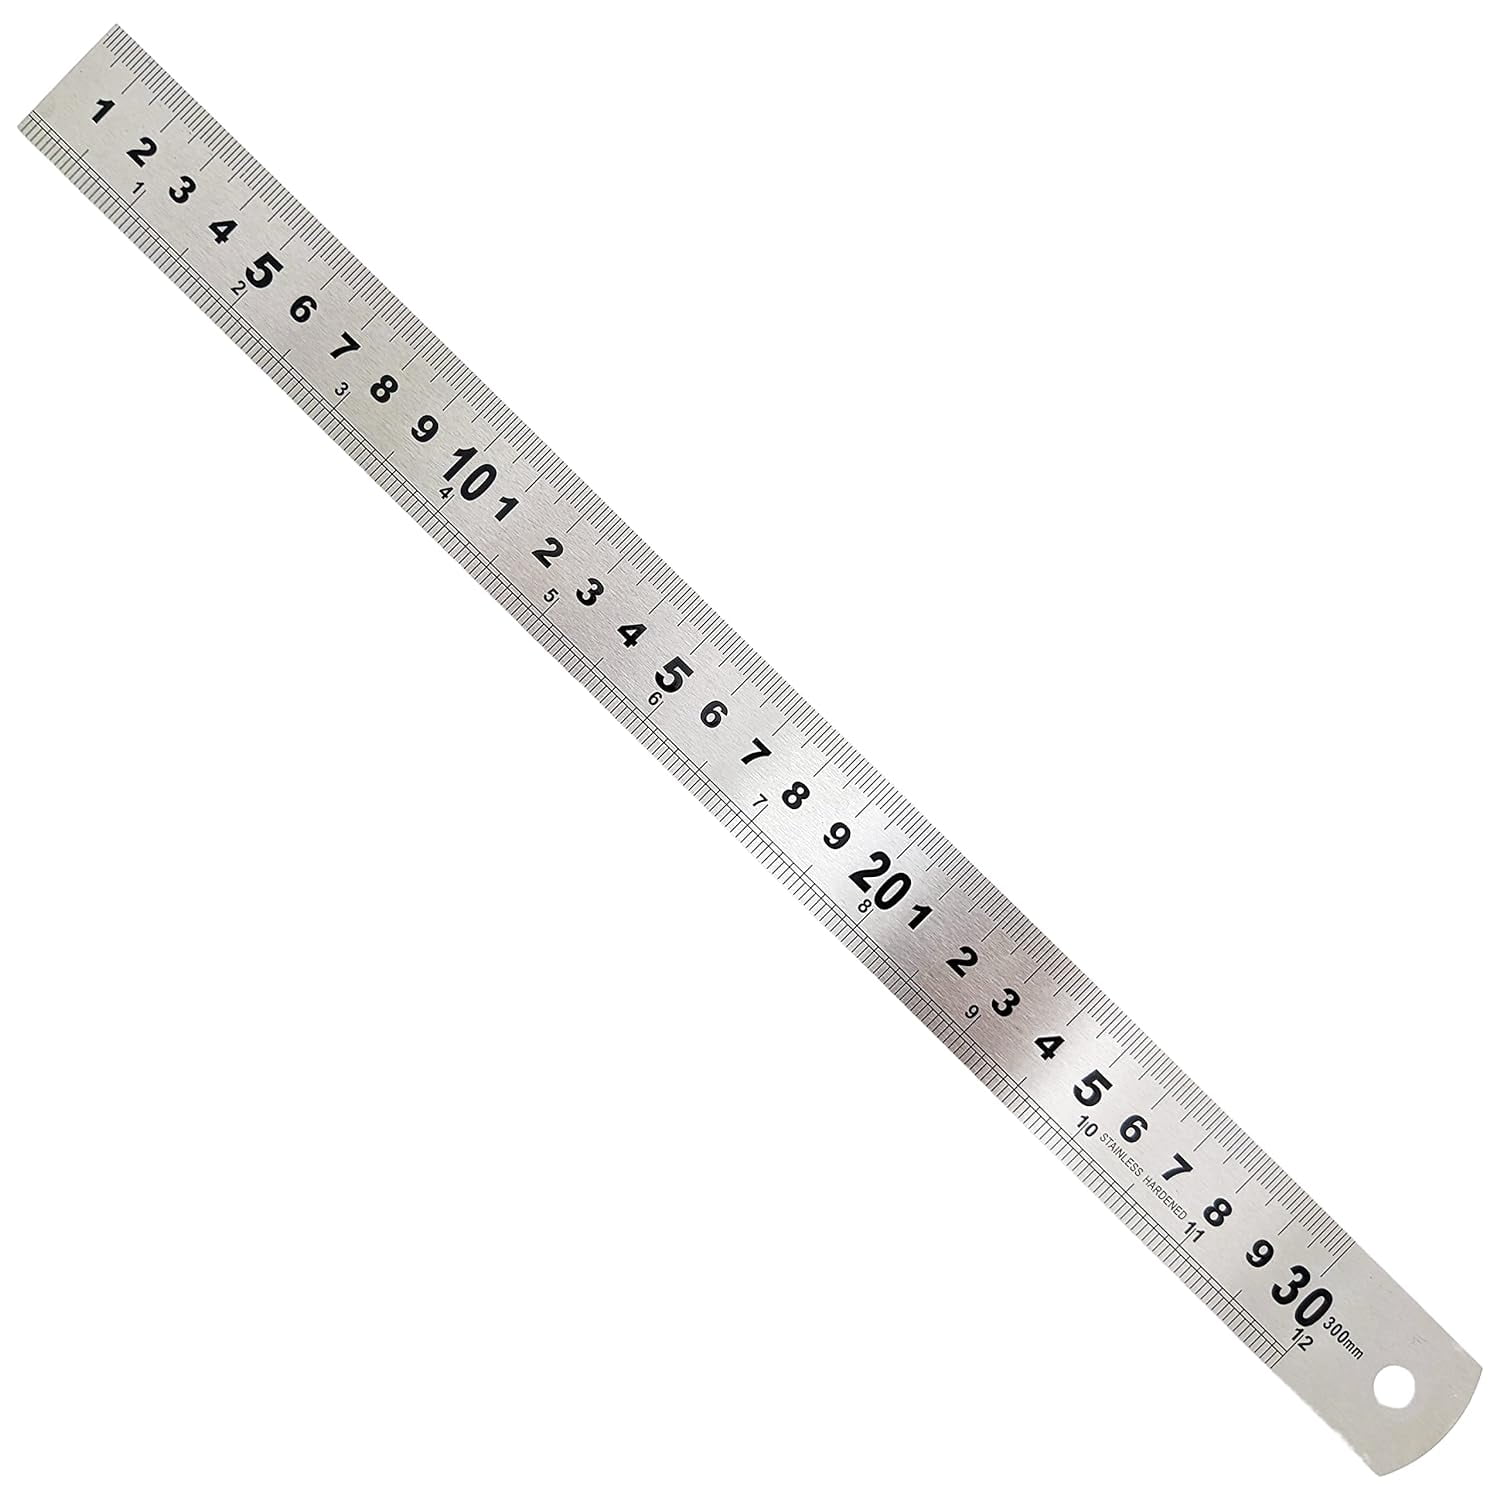 Stainless Steel Ruler 30 cm (12)